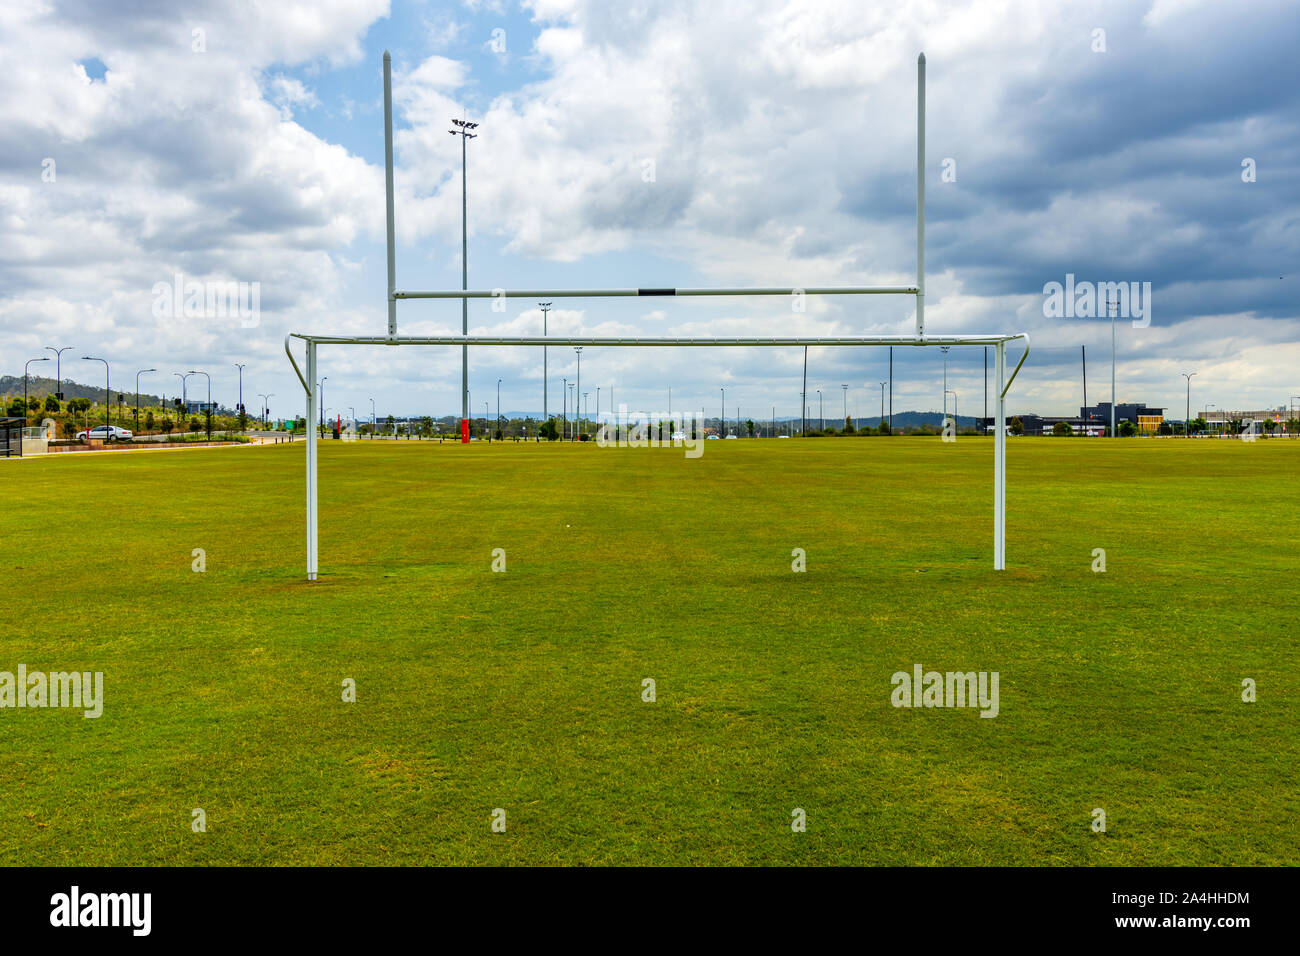 Objetivos de fútbol en un terreno deportivo vacío Foto de stock